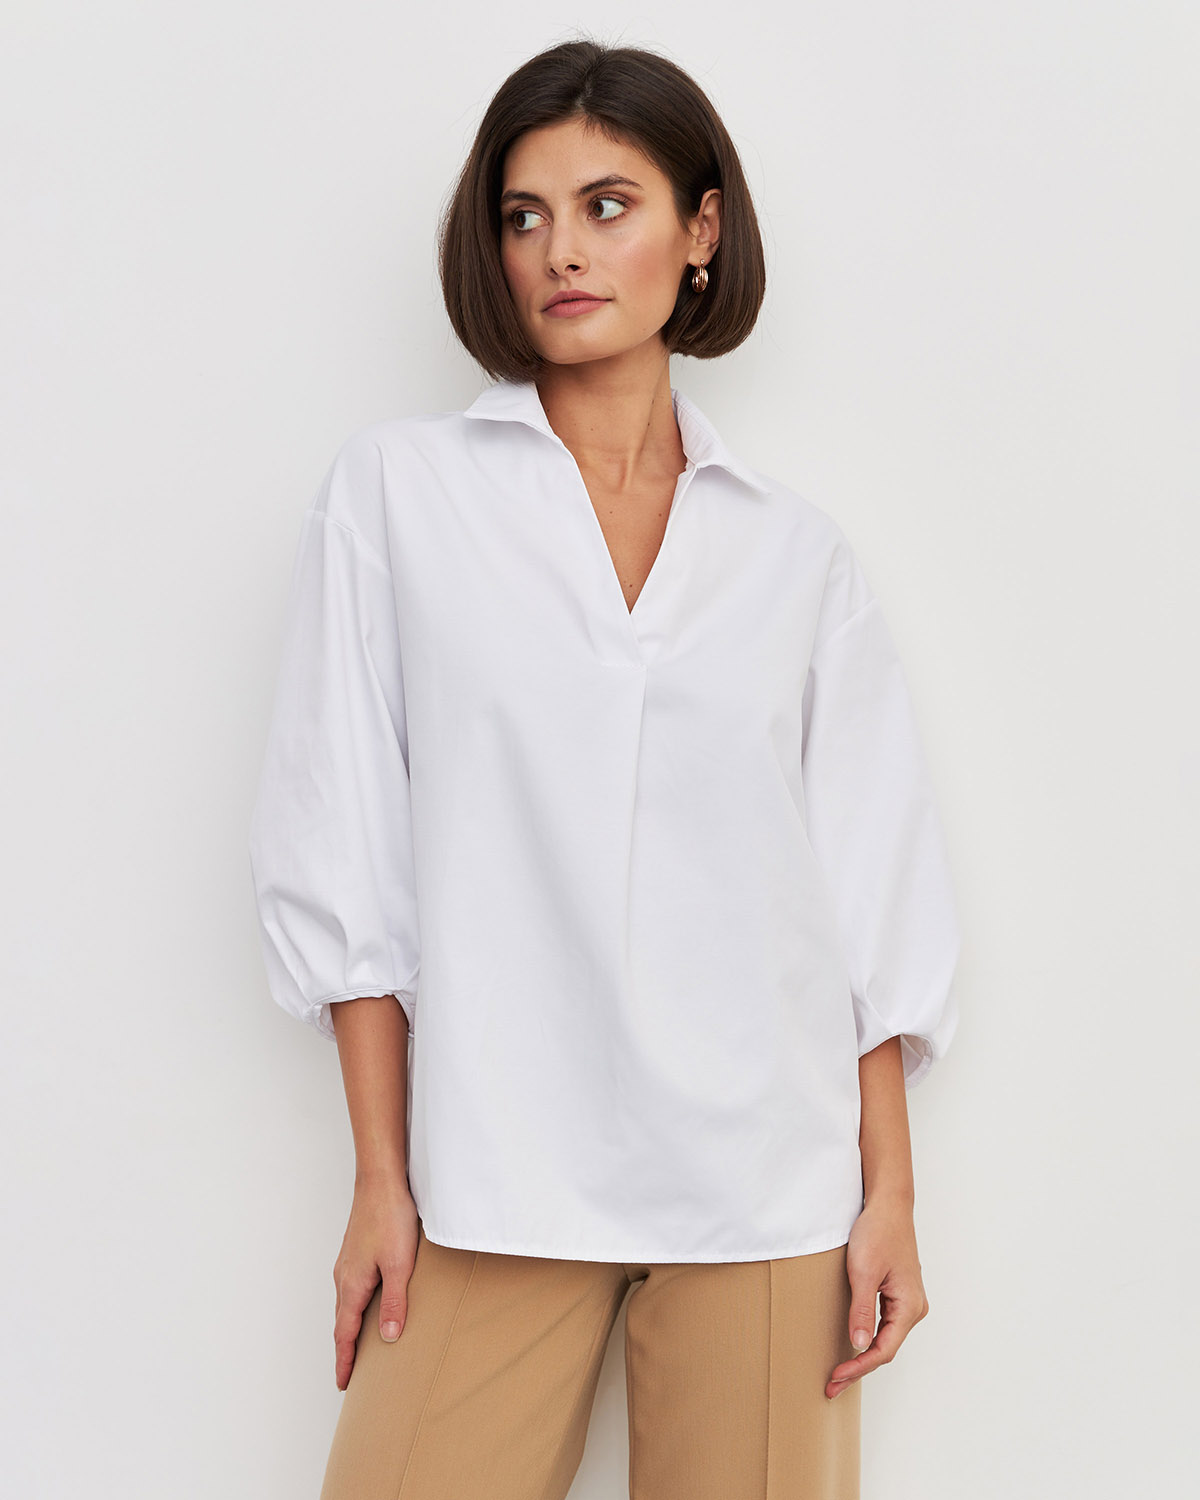 Рубашка женская LaVerita Р-002-1 белая 54 RU